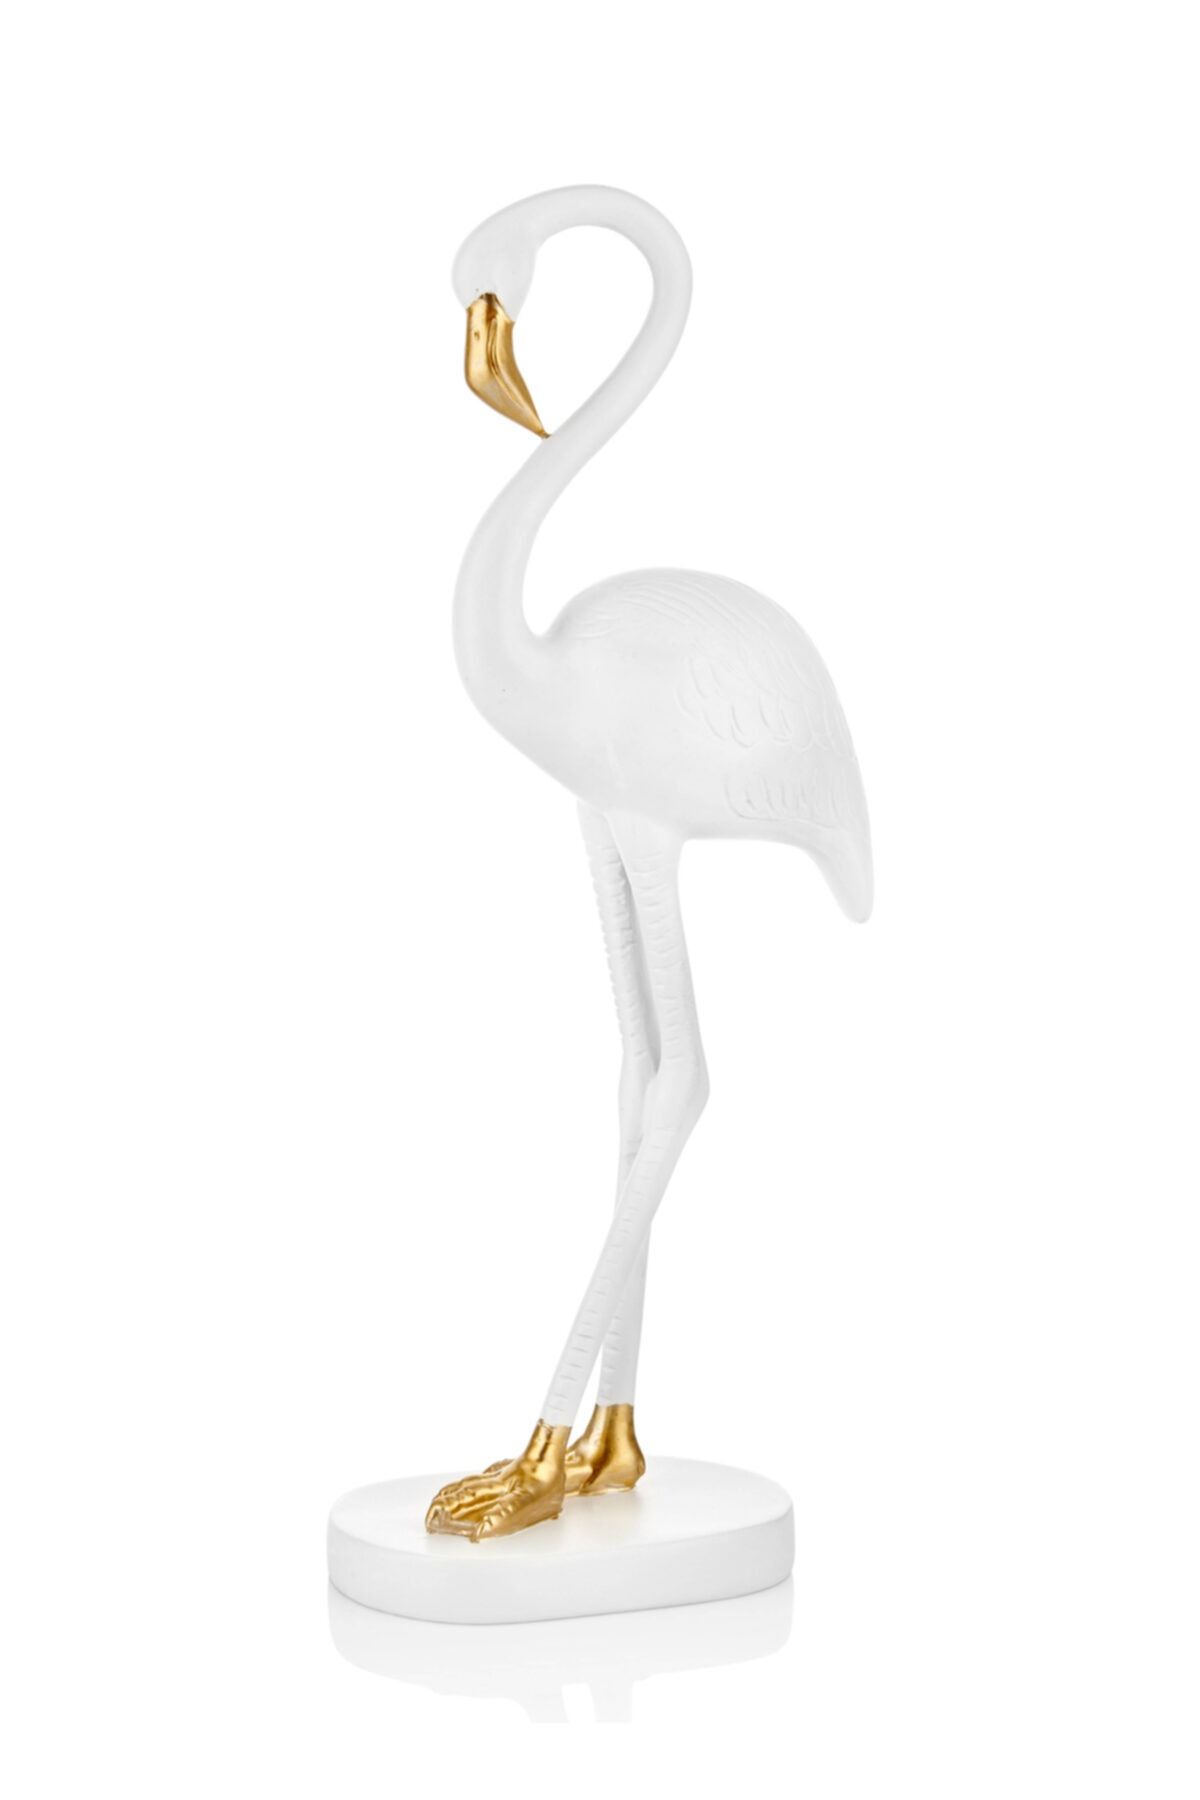 Çiçekmisin Flamingo Masaüstü Dekoratif Obje 46 Cm - Beyaz